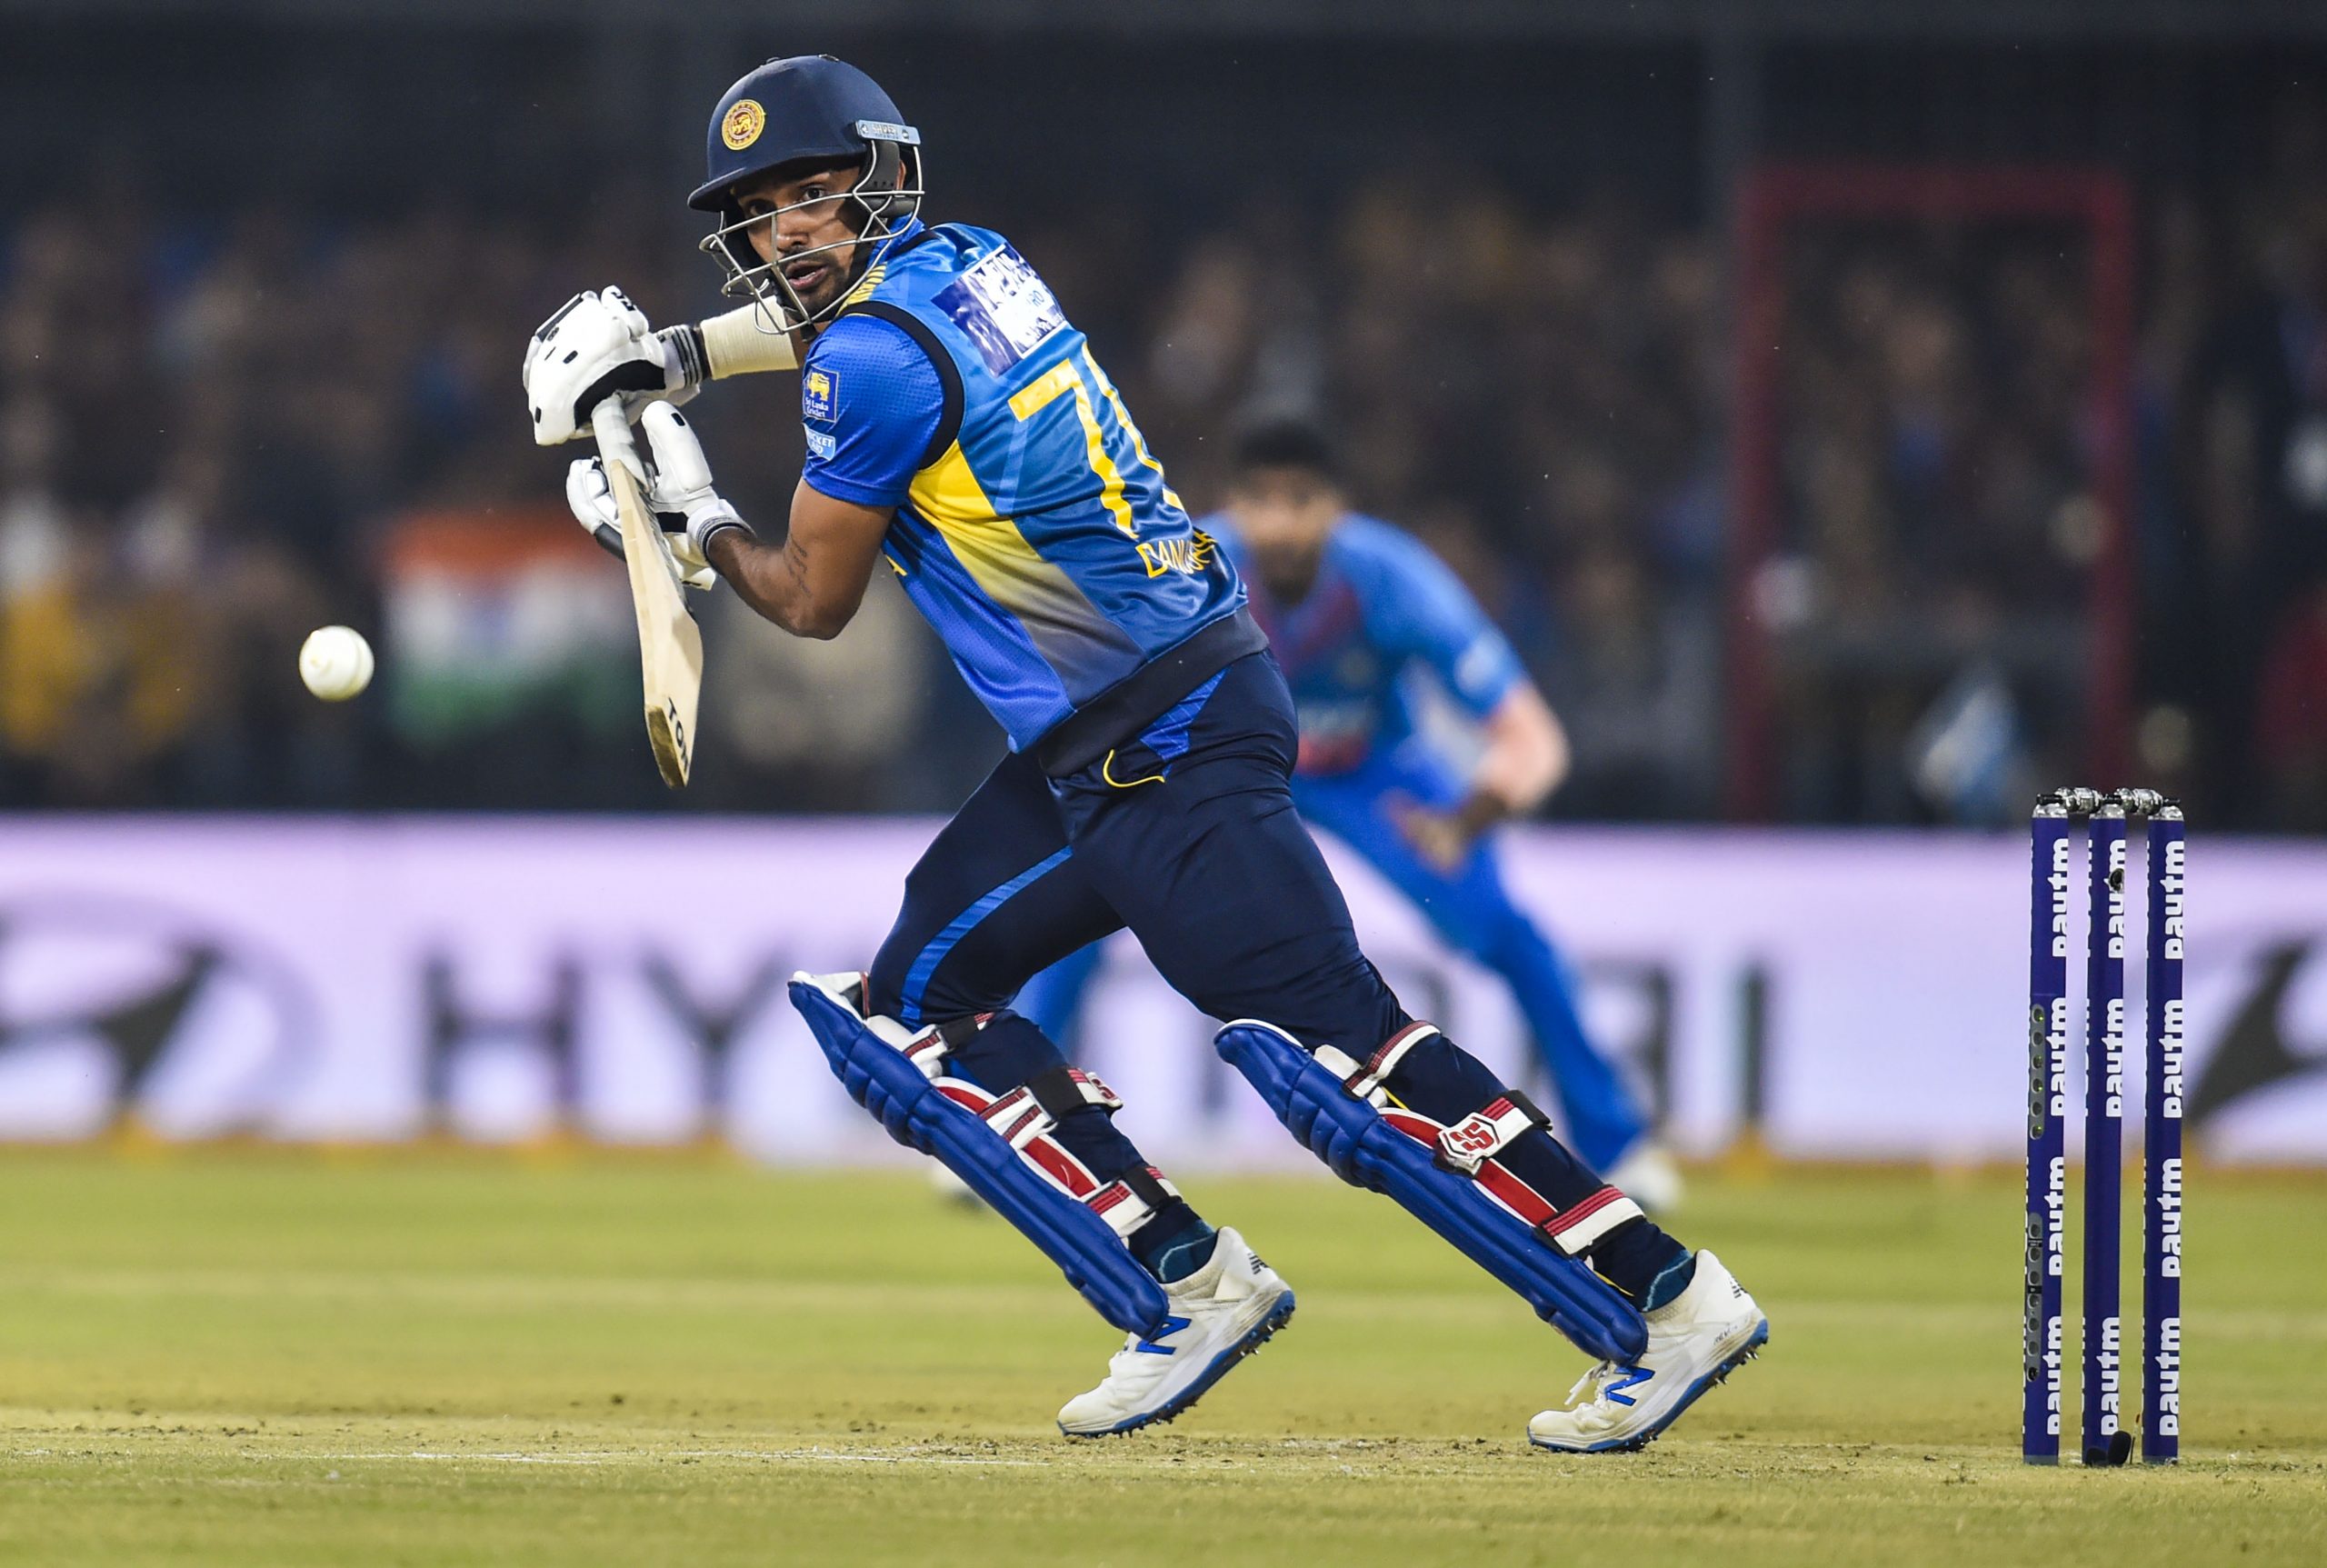 Danushka Gunathilaka: SLC suspends cricketer after arrest in Australia on rape charges